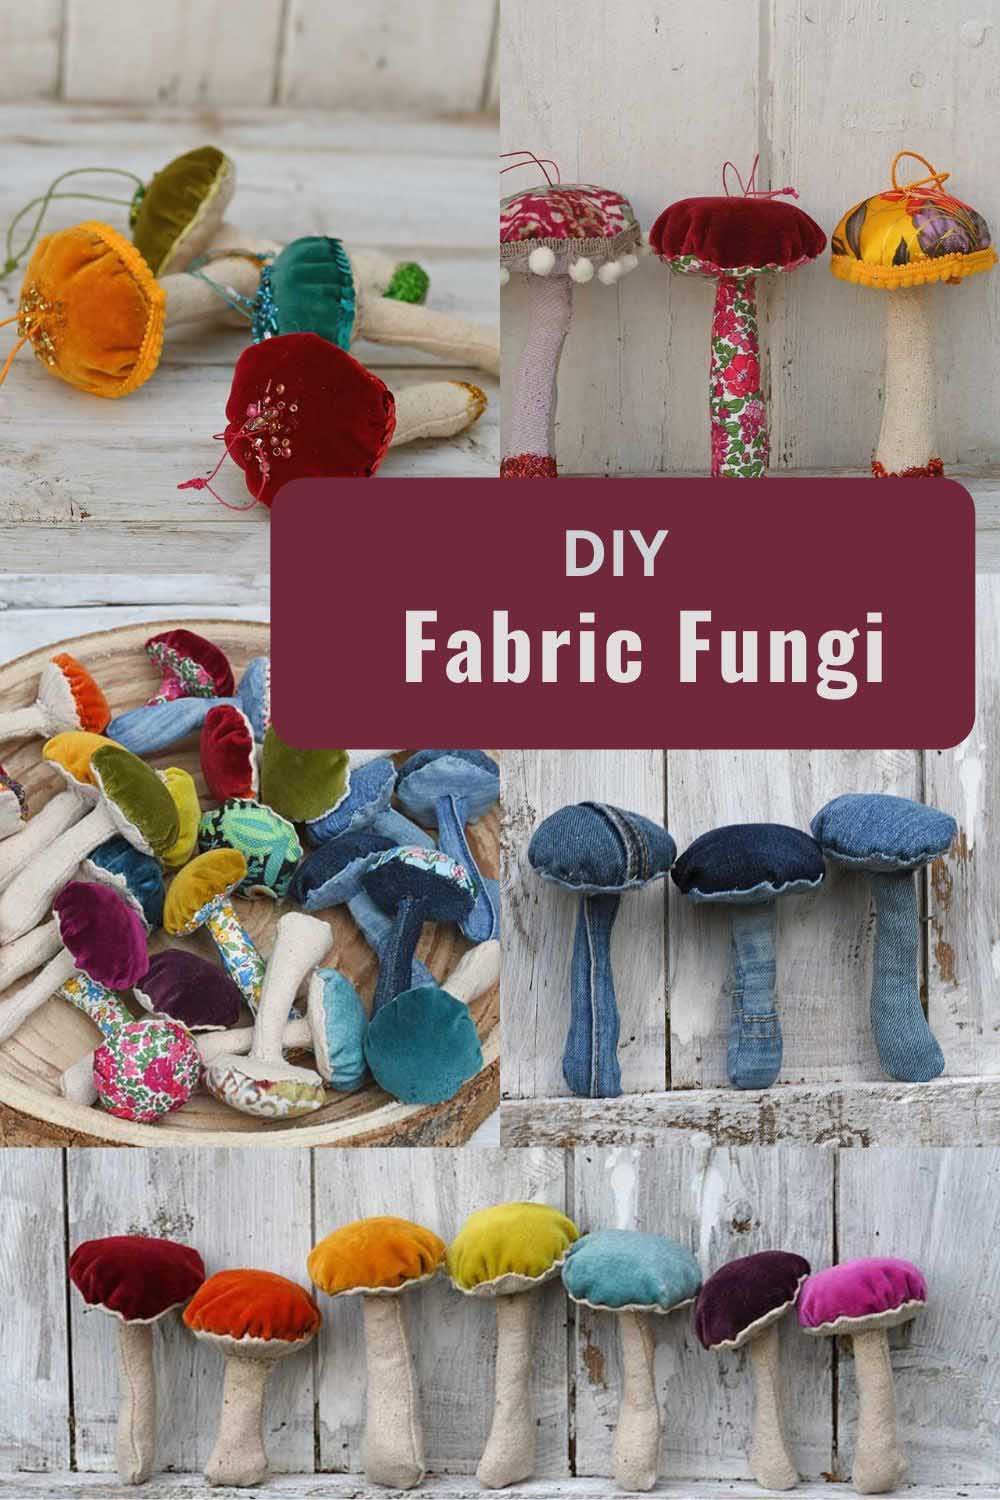 DIY fabric fungi